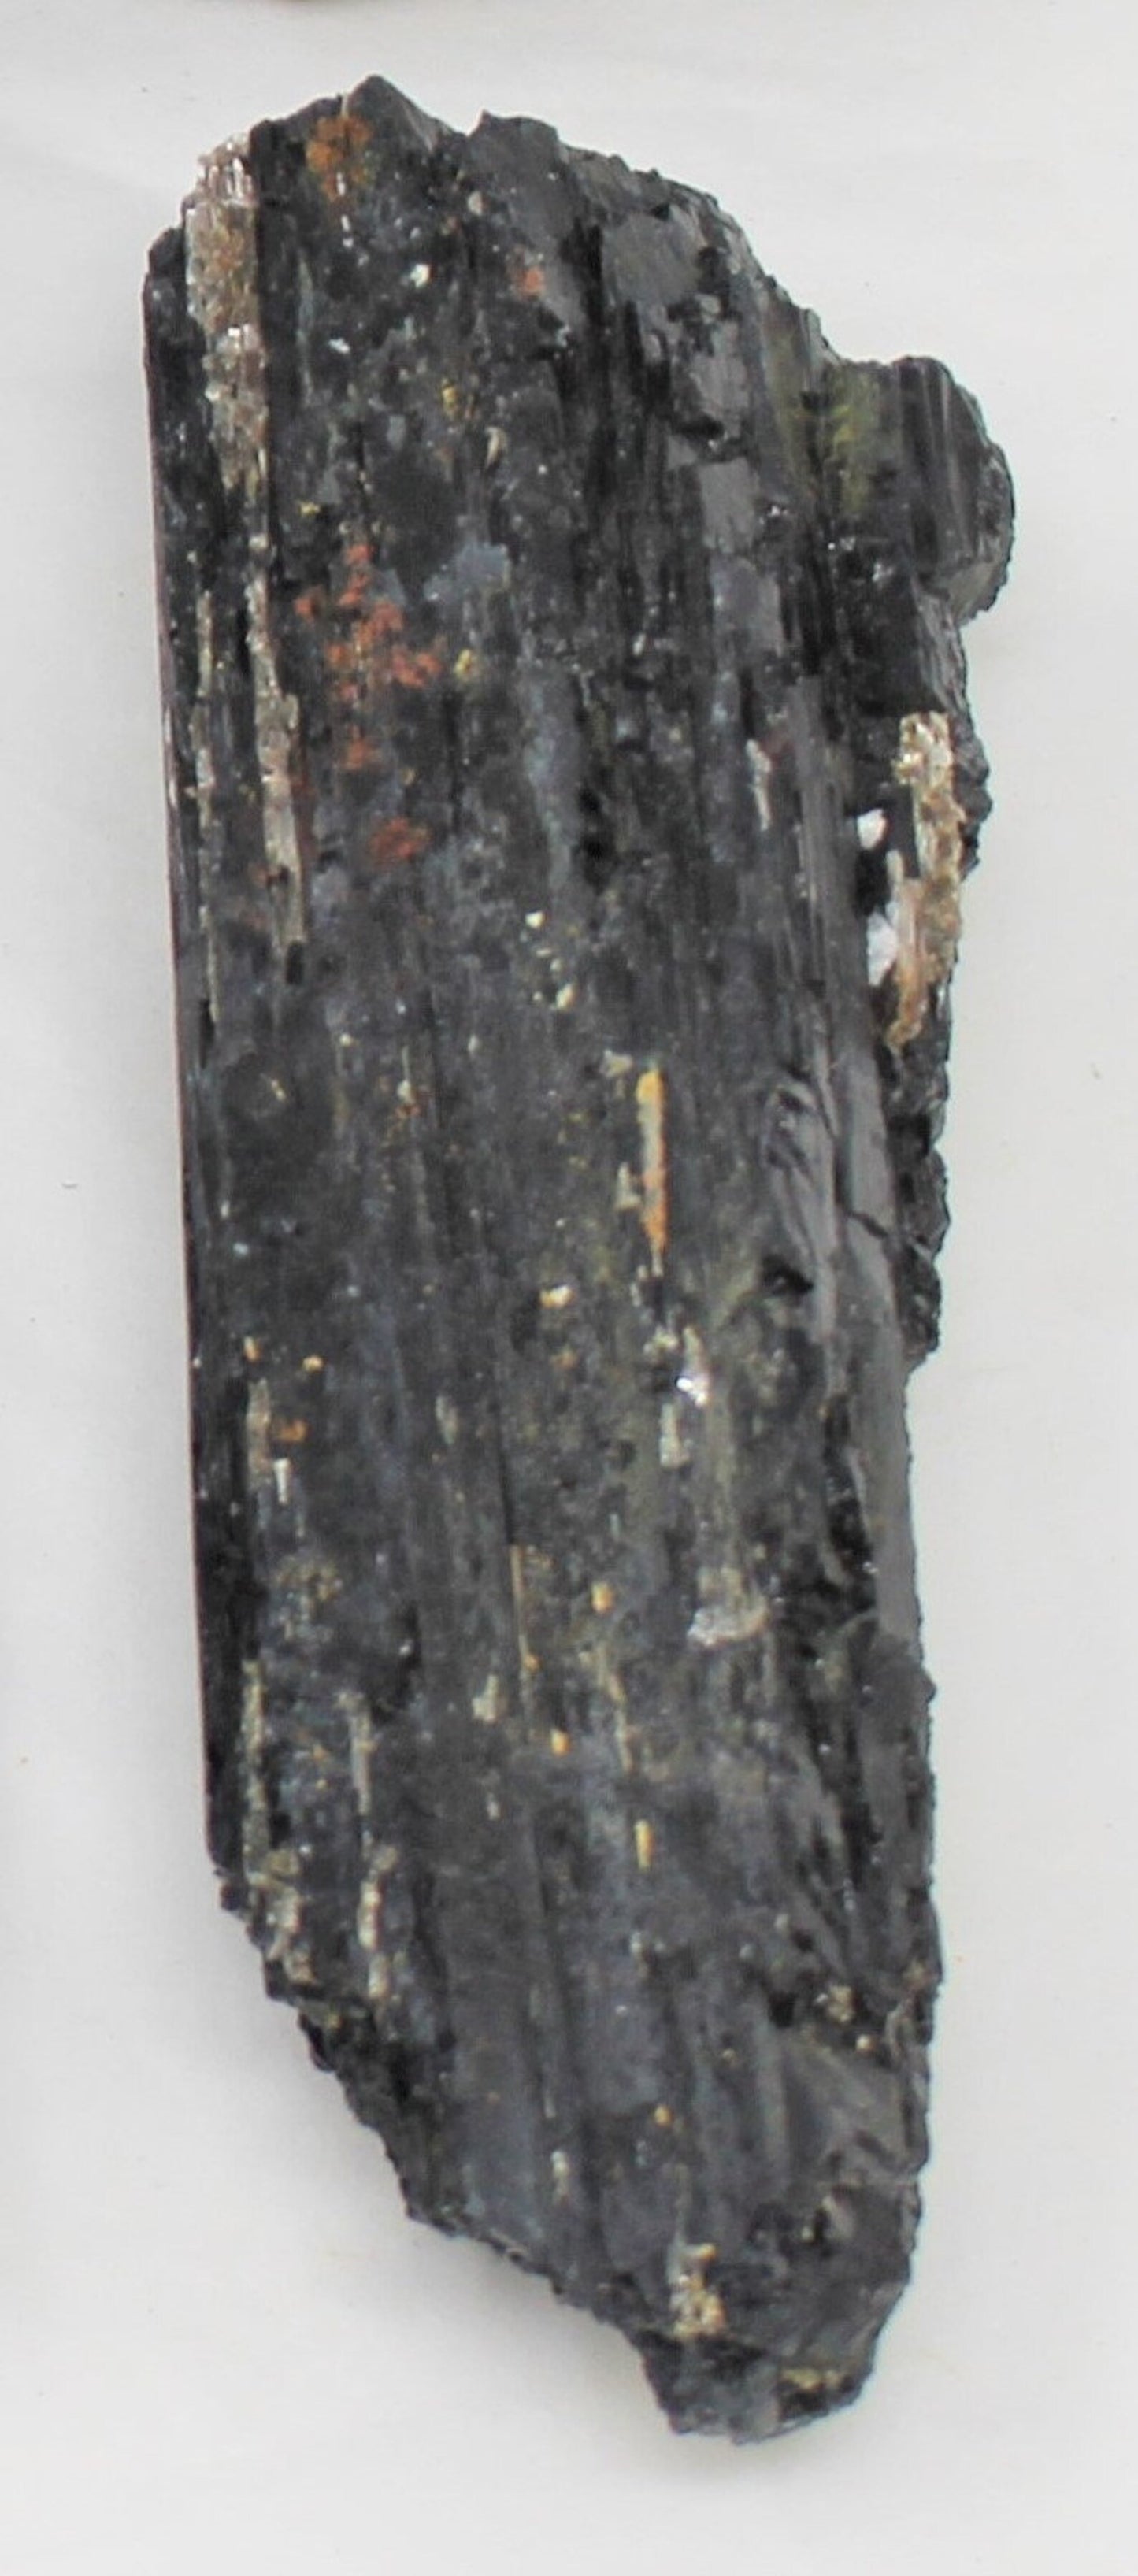 Tourmaline Log Protection Crystal